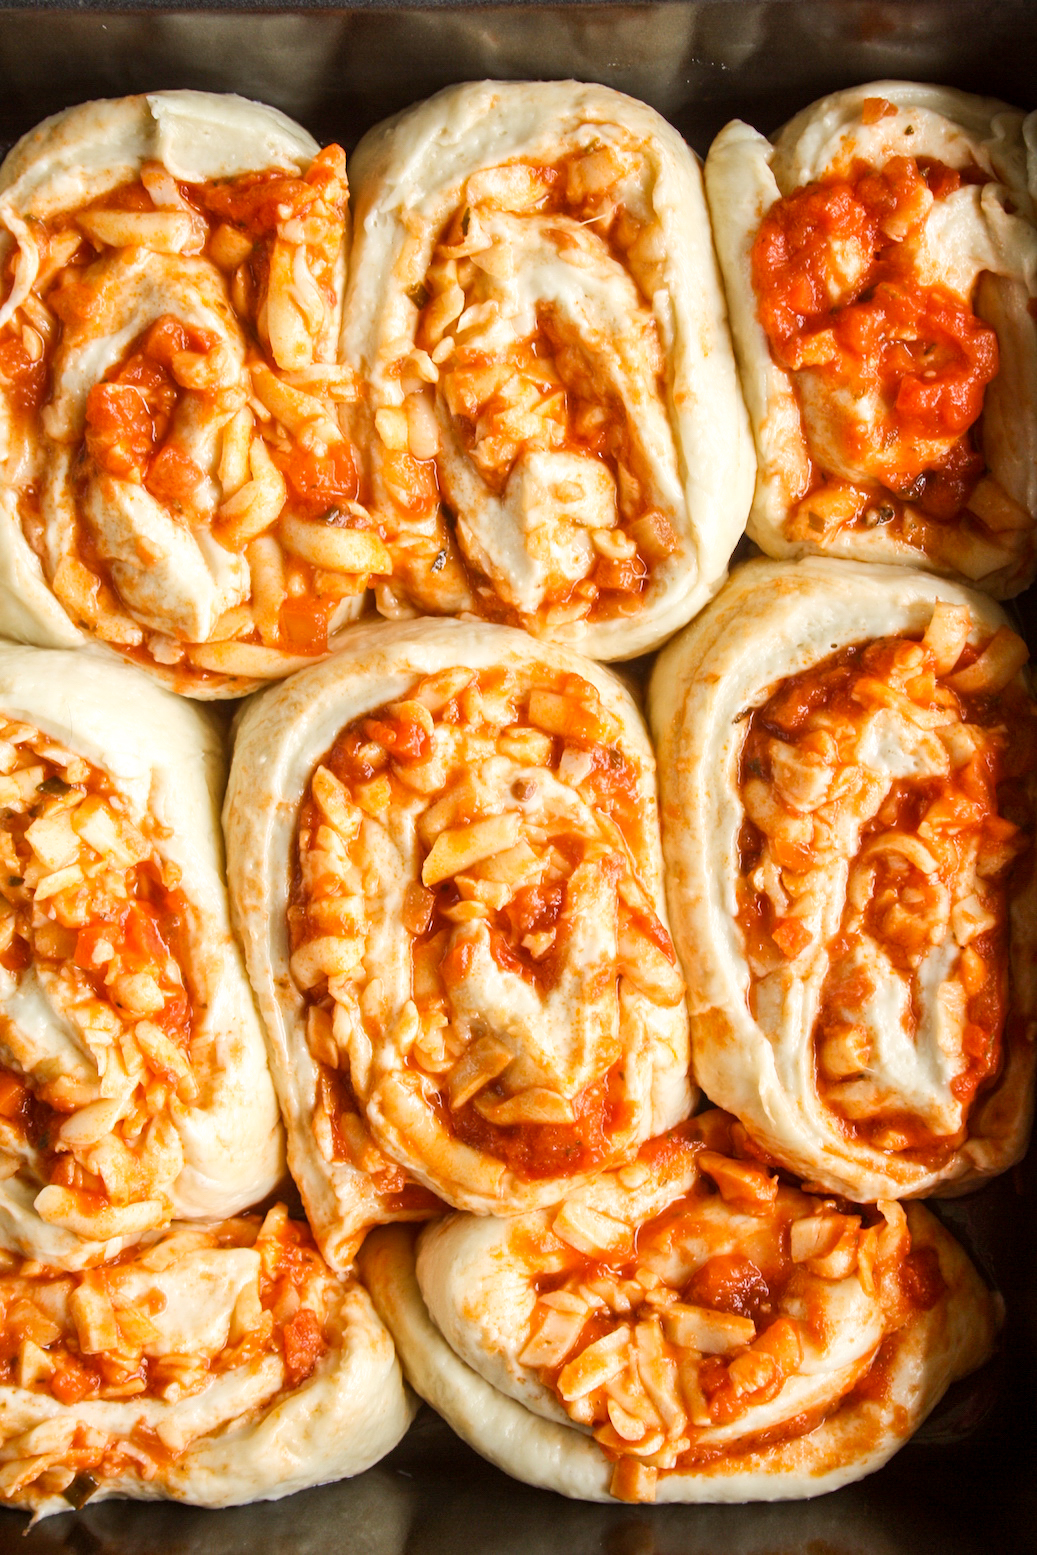 Soft, cheesy bread rolls with pizza sauce and mozzarella